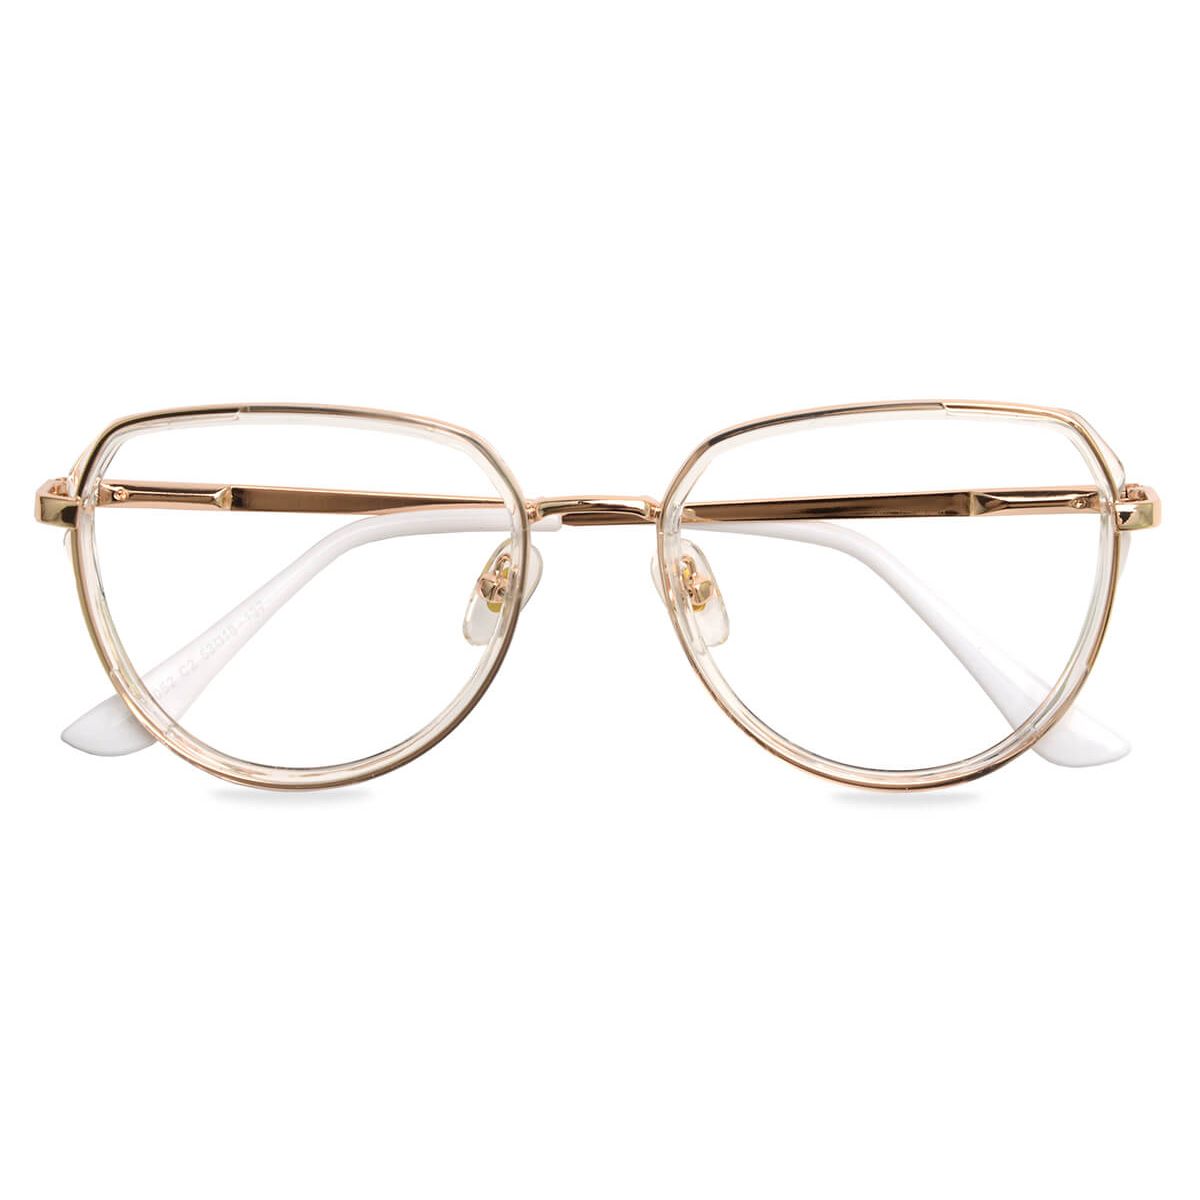 87052 Oval Clear Eyeglasses Frames | Leoptique